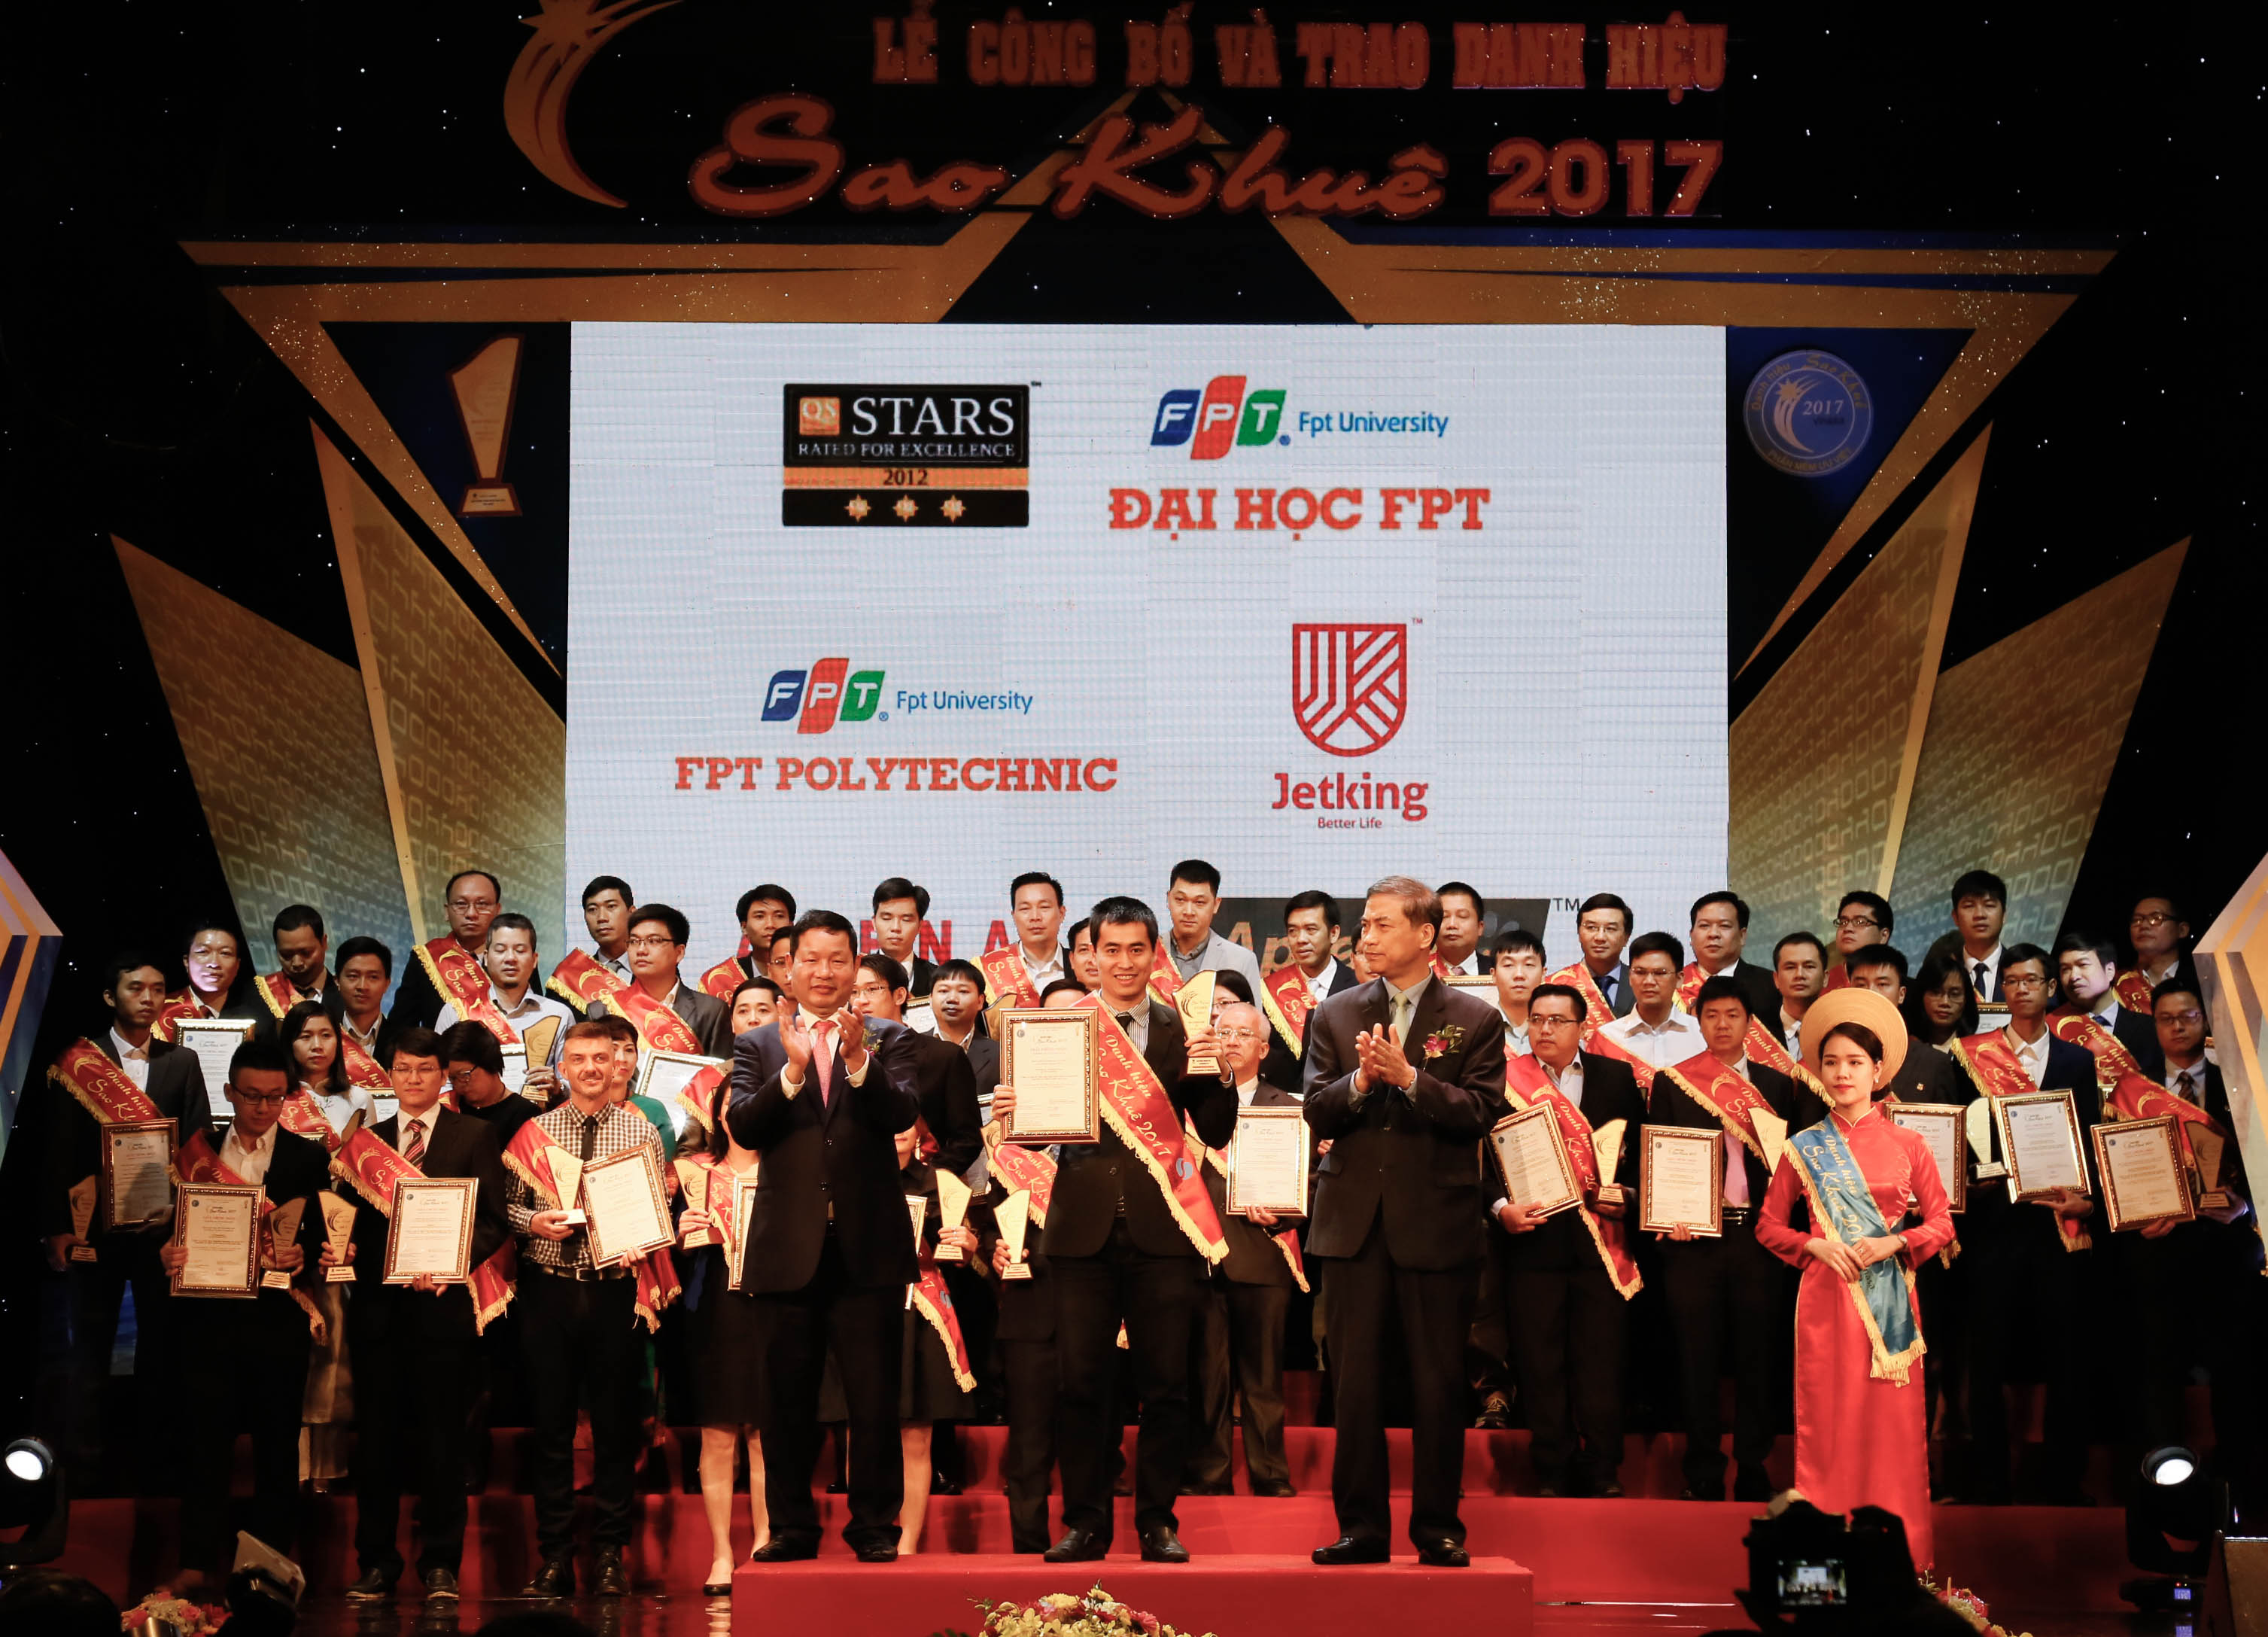 Tổ chức Giáo dục FPT nhận danh hiệu Sao Khuê 2017